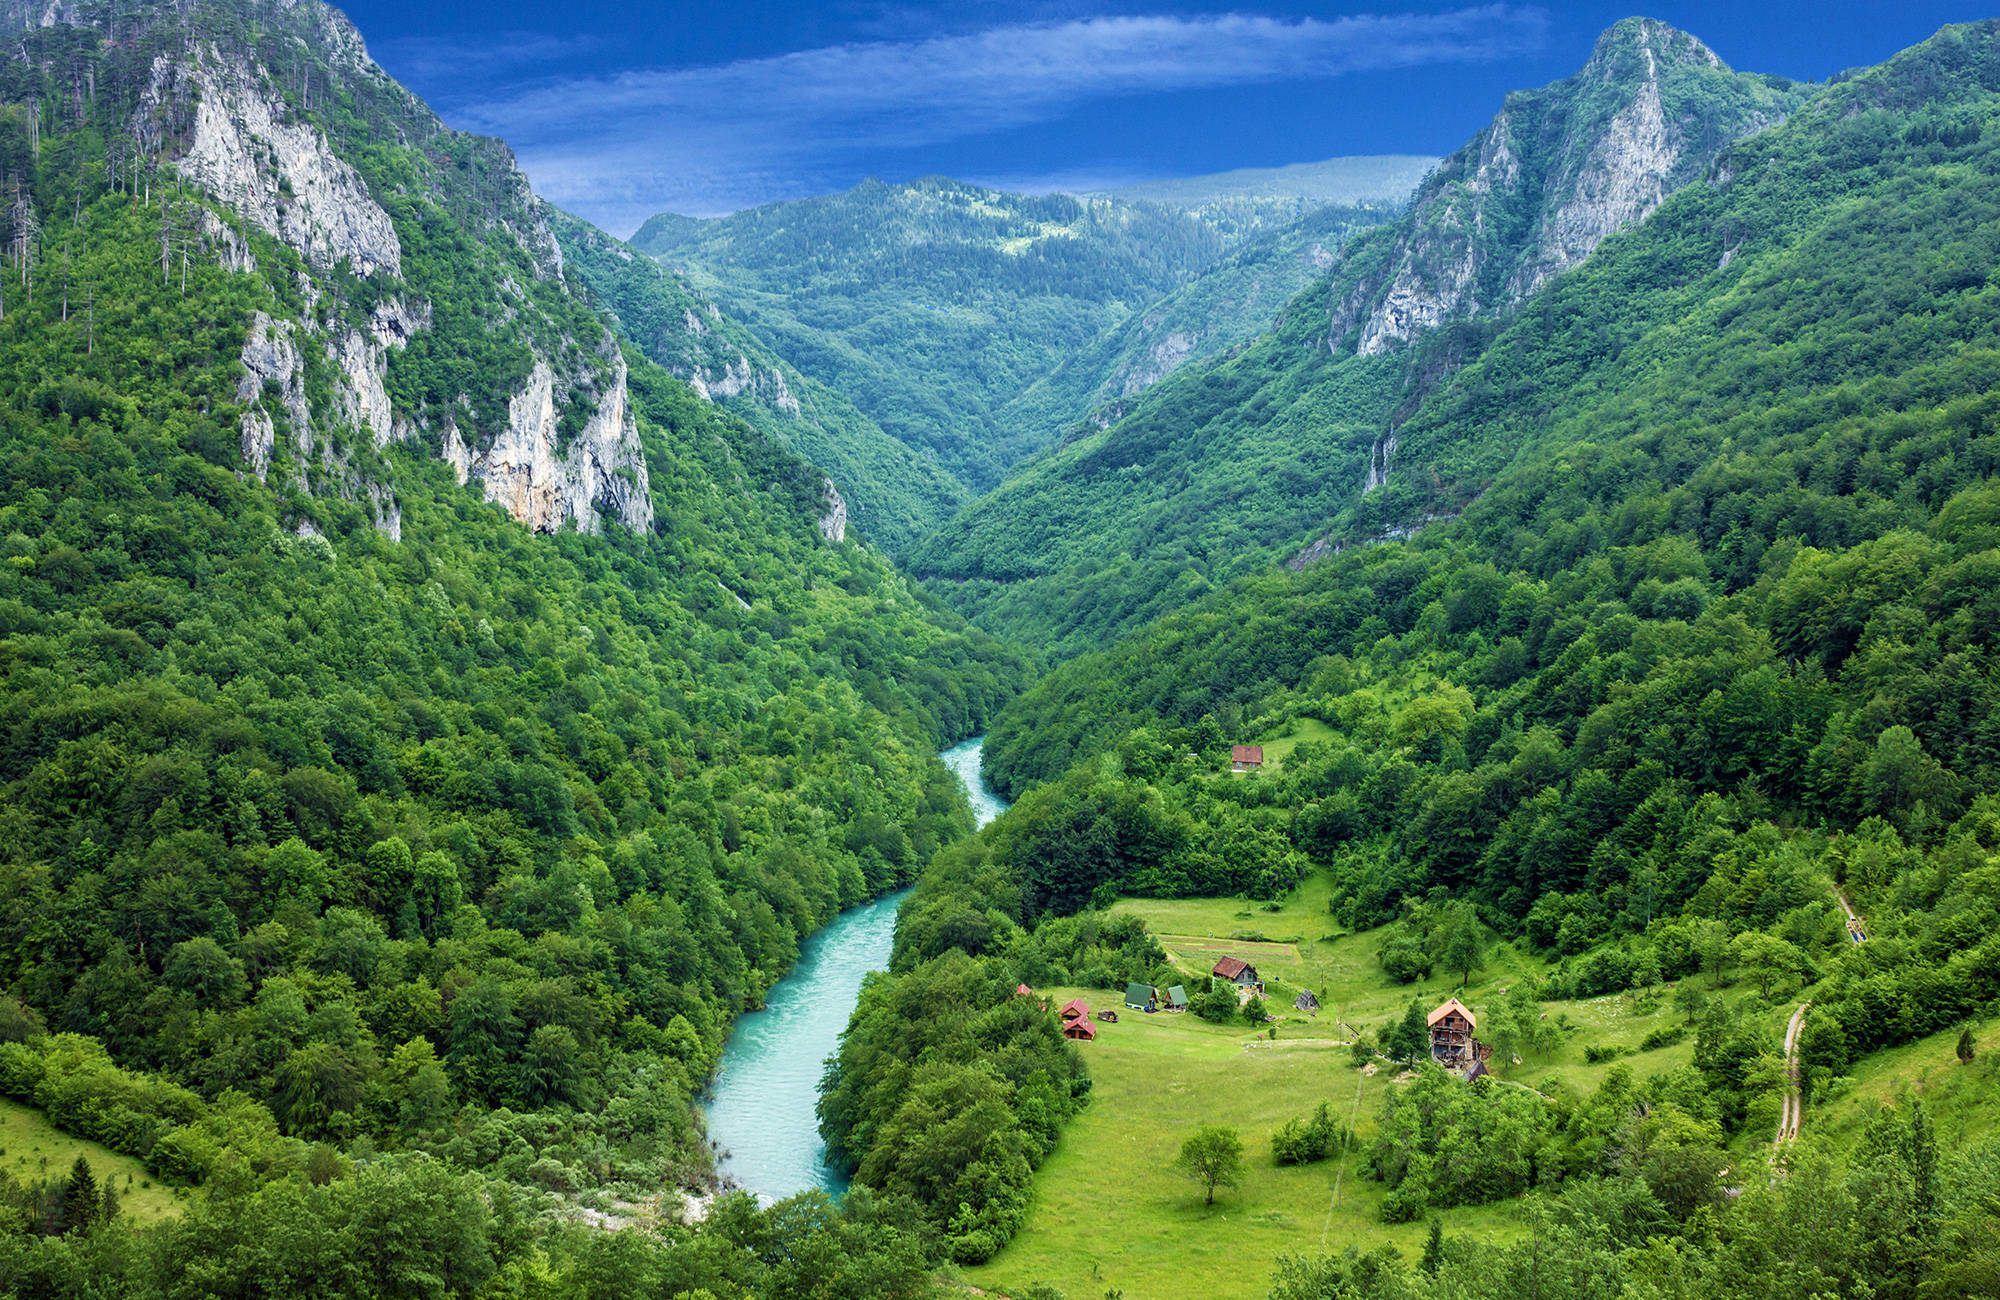 River Tara i Montenegro med de grønne omgivelser